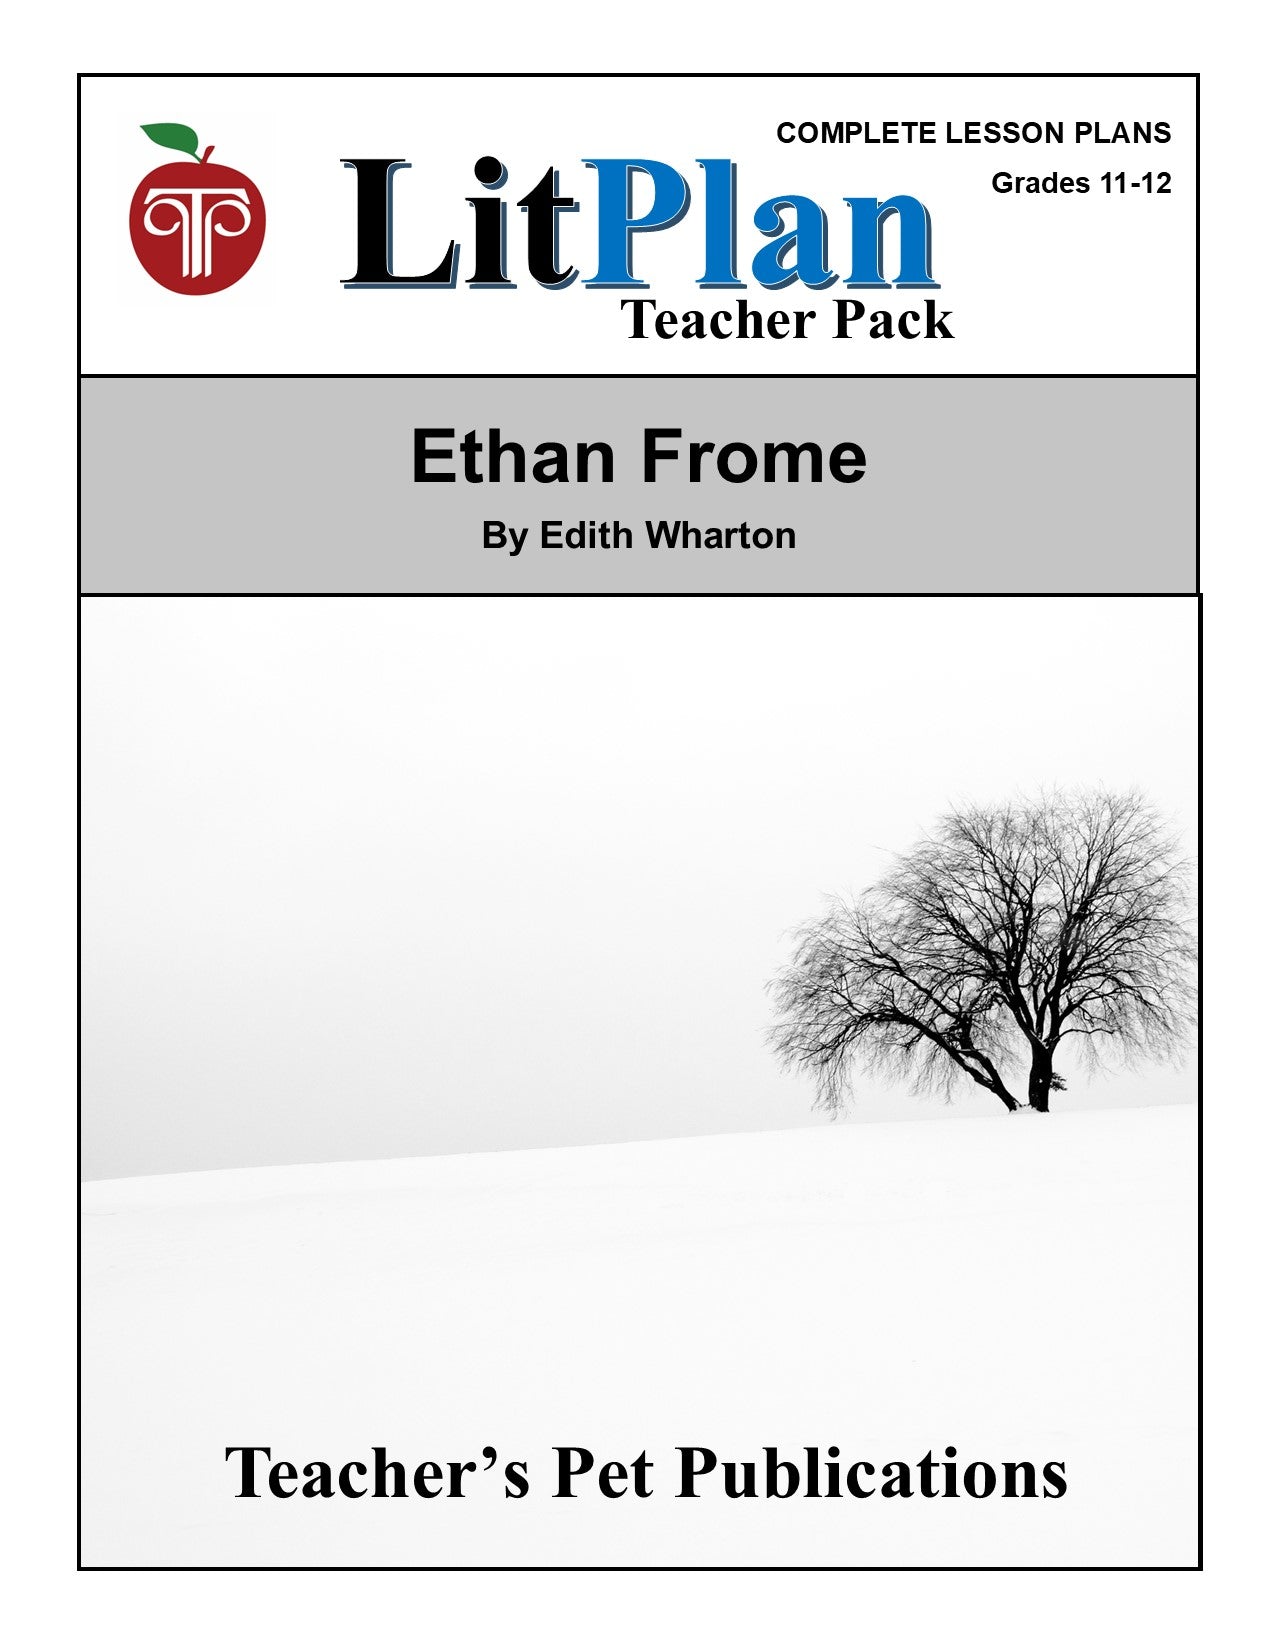 Ethan Frome: LitPlan Teacher Pack Grades 11-12